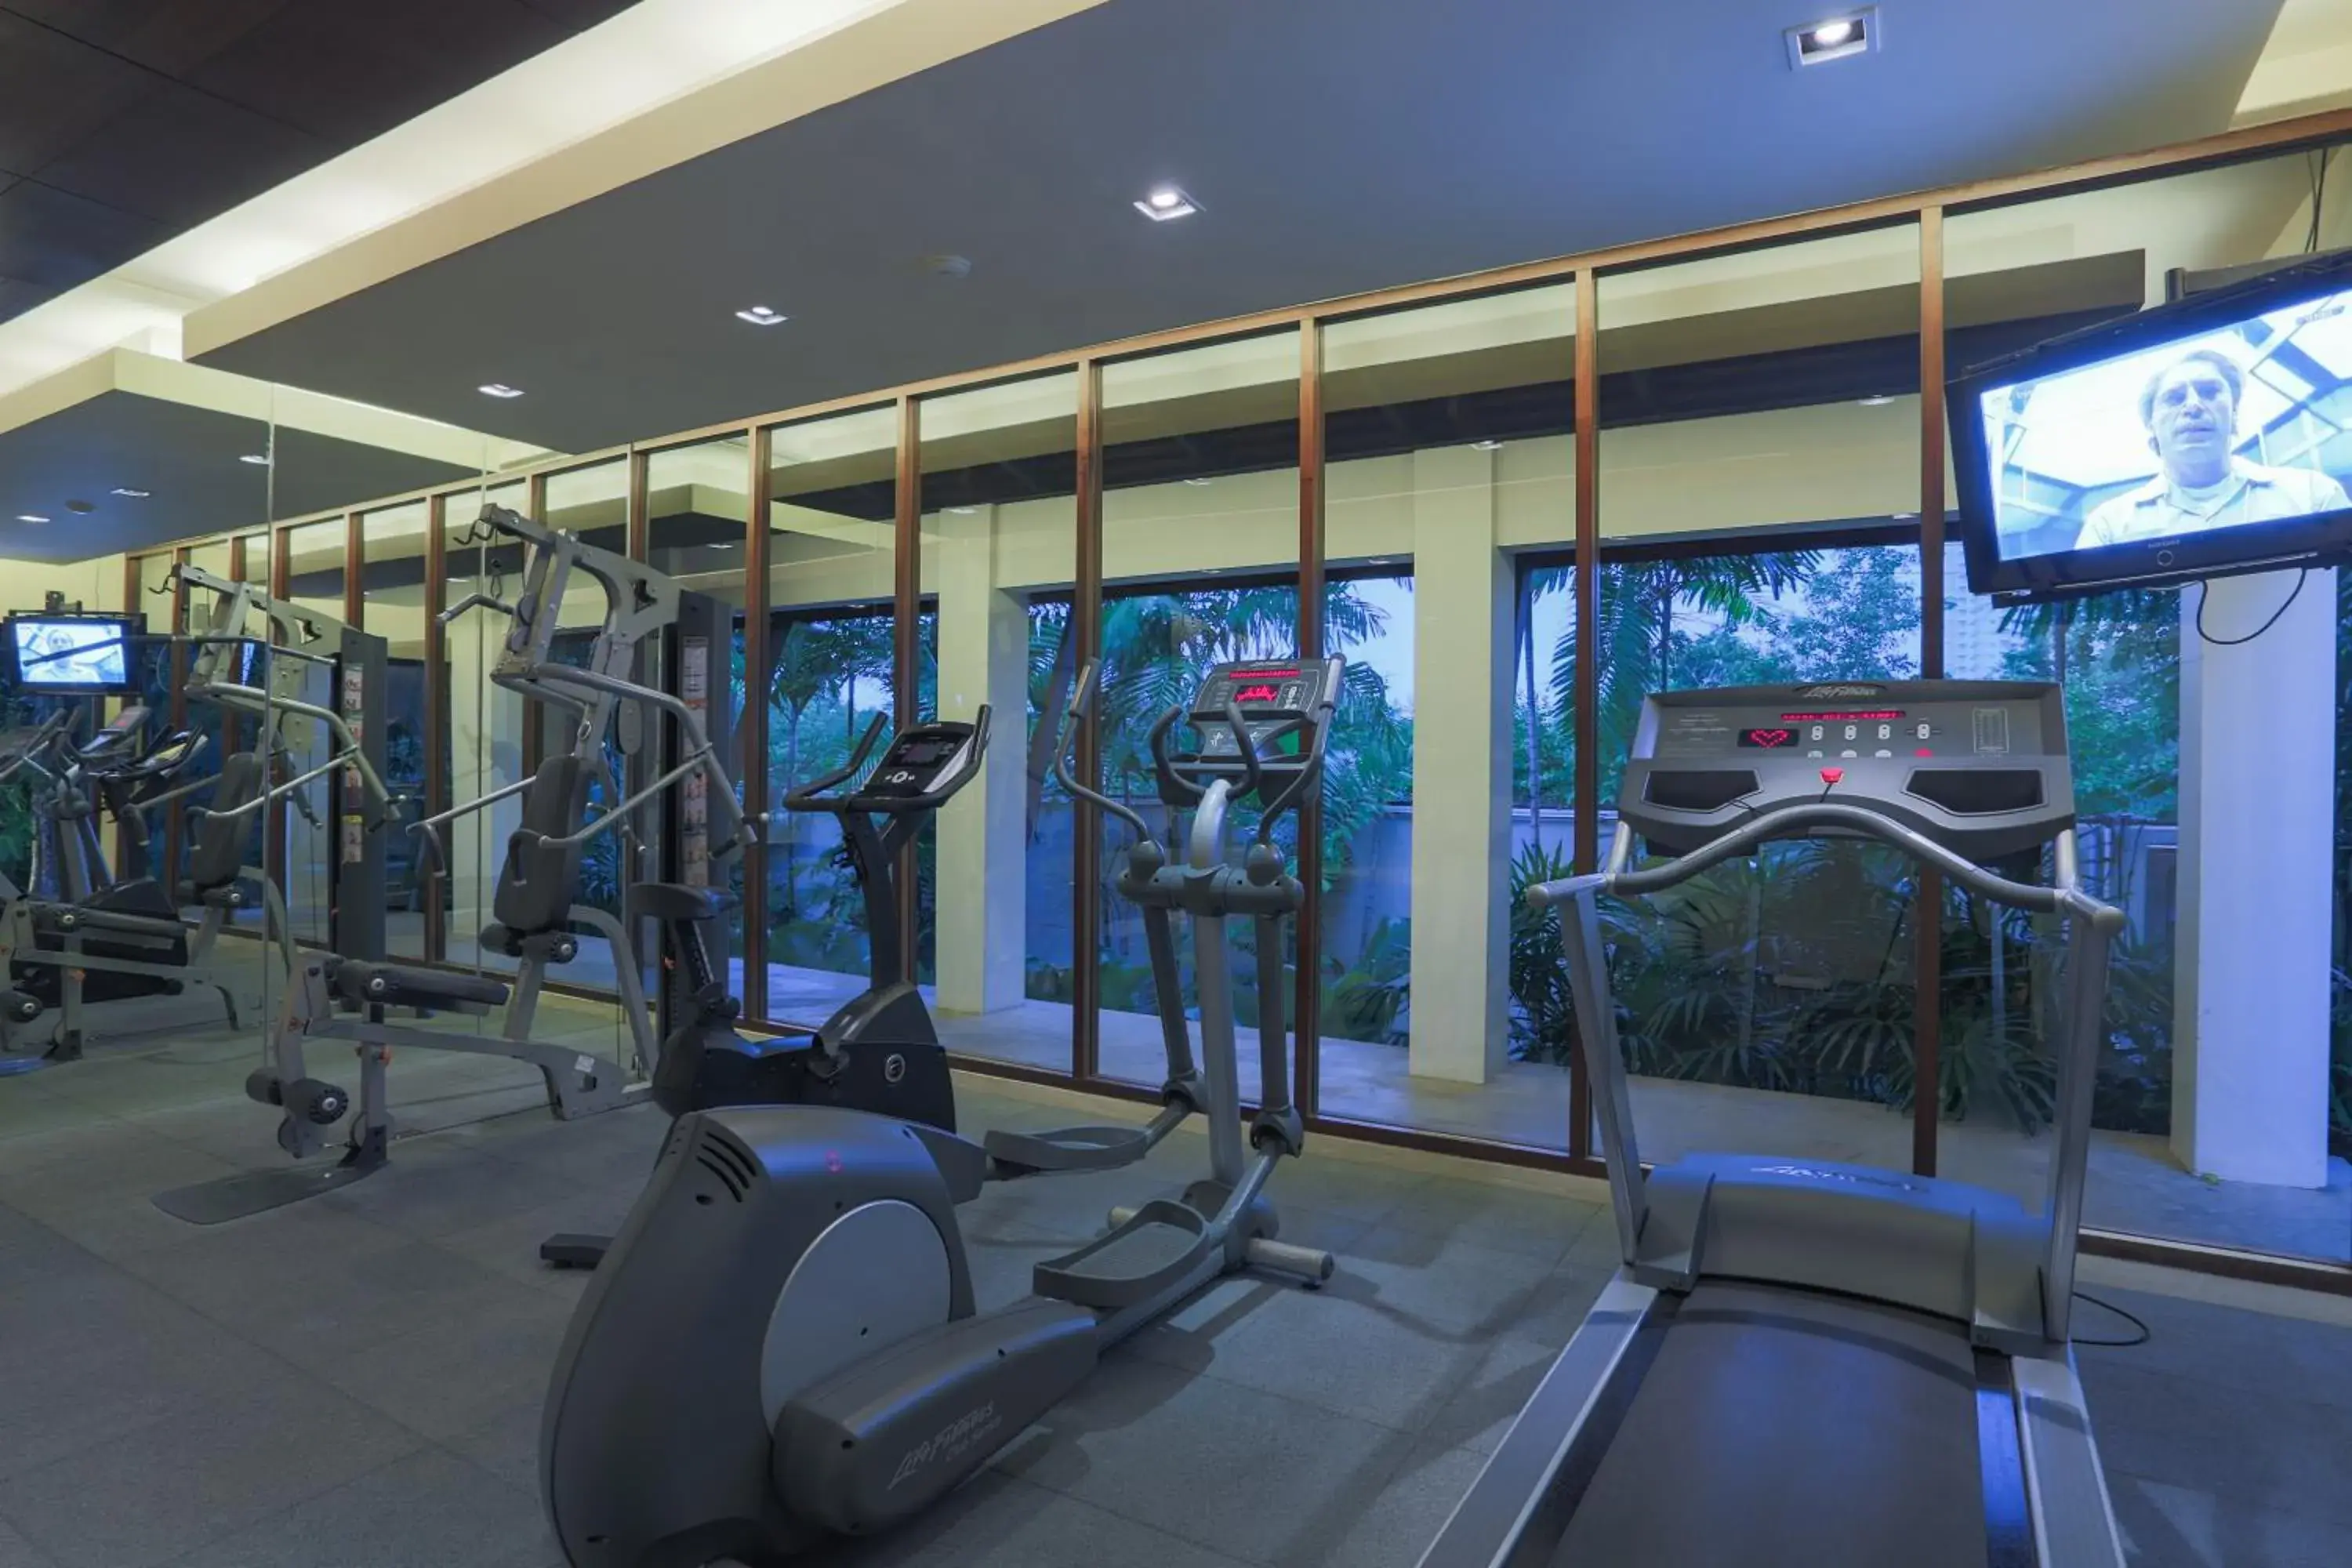 Fitness centre/facilities, Fitness Center/Facilities in Veranda Resort & Villas Hua Hin Cha Am